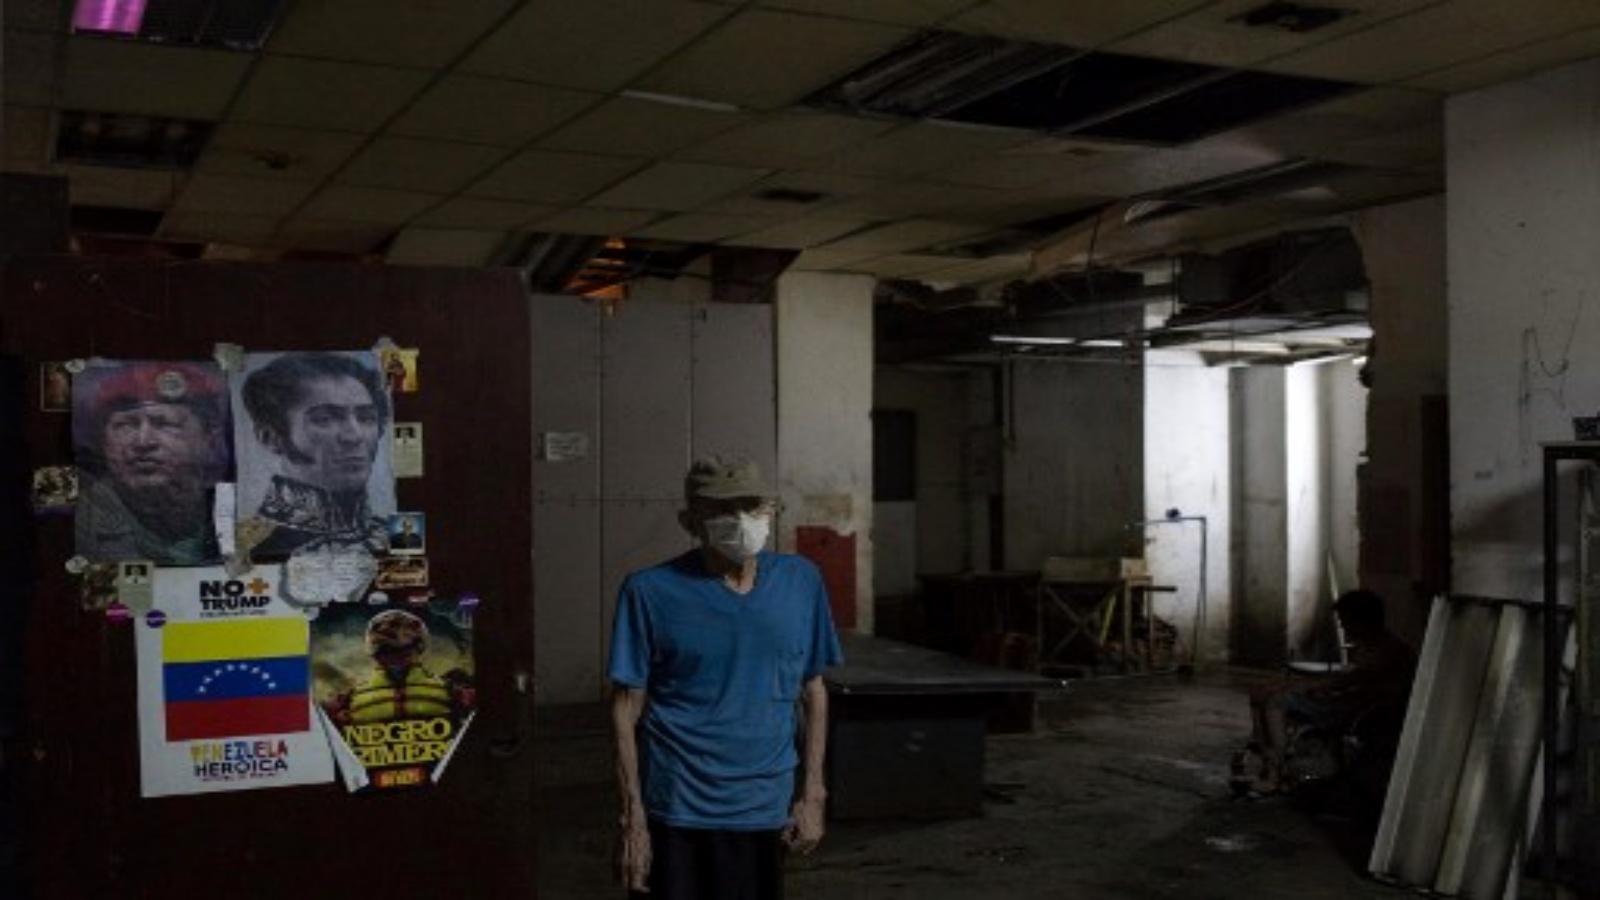 رجل يقف بجانب ملصقات تصور المحرر الفنزويلي سيمون بوليفار (يمين) والزعيم الفنزويلي الراحل هوغو تشافيز ، في قاعات ملجأ يقع في الطابق السفلي من مبنى Sudameris العام في كاراكاس ، في 9 أكتوبر 2020 ، وسط جائحة فيروس كورونا الجديد . تعيش 14 عائلة بدون كهرباء أو تهوية أو مياه جارية أو حمامات في الطابق السفلي من مبنى حكومي في كاراكاس مما يجعلها عرضة بشكل خاص لفيروس كورونا.